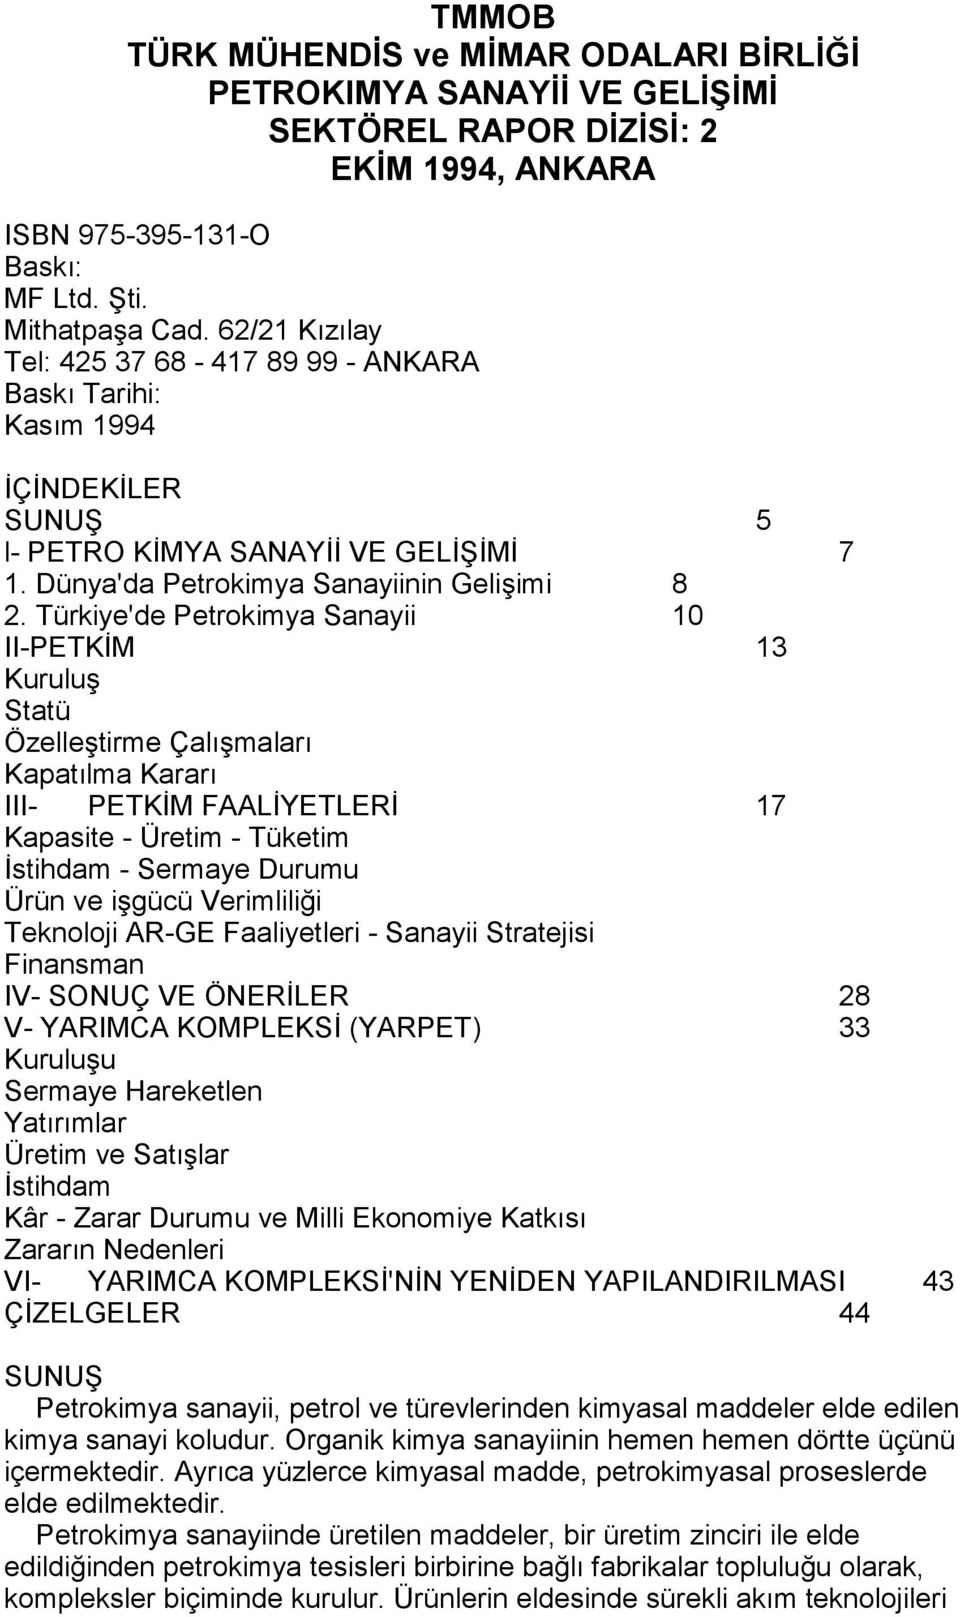 Türkiye'de Petrokimya Sanayii 10 II-PETKİM 13 Kuruluş Statü Özelleştirme Çalõşmalarõ Kapatõlma Kararõ III- PETKİM FAALİYETLERİ 17 Kapasite - Üretim - Tüketim İstihdam - Sermaye Durumu Ürün ve işgücü